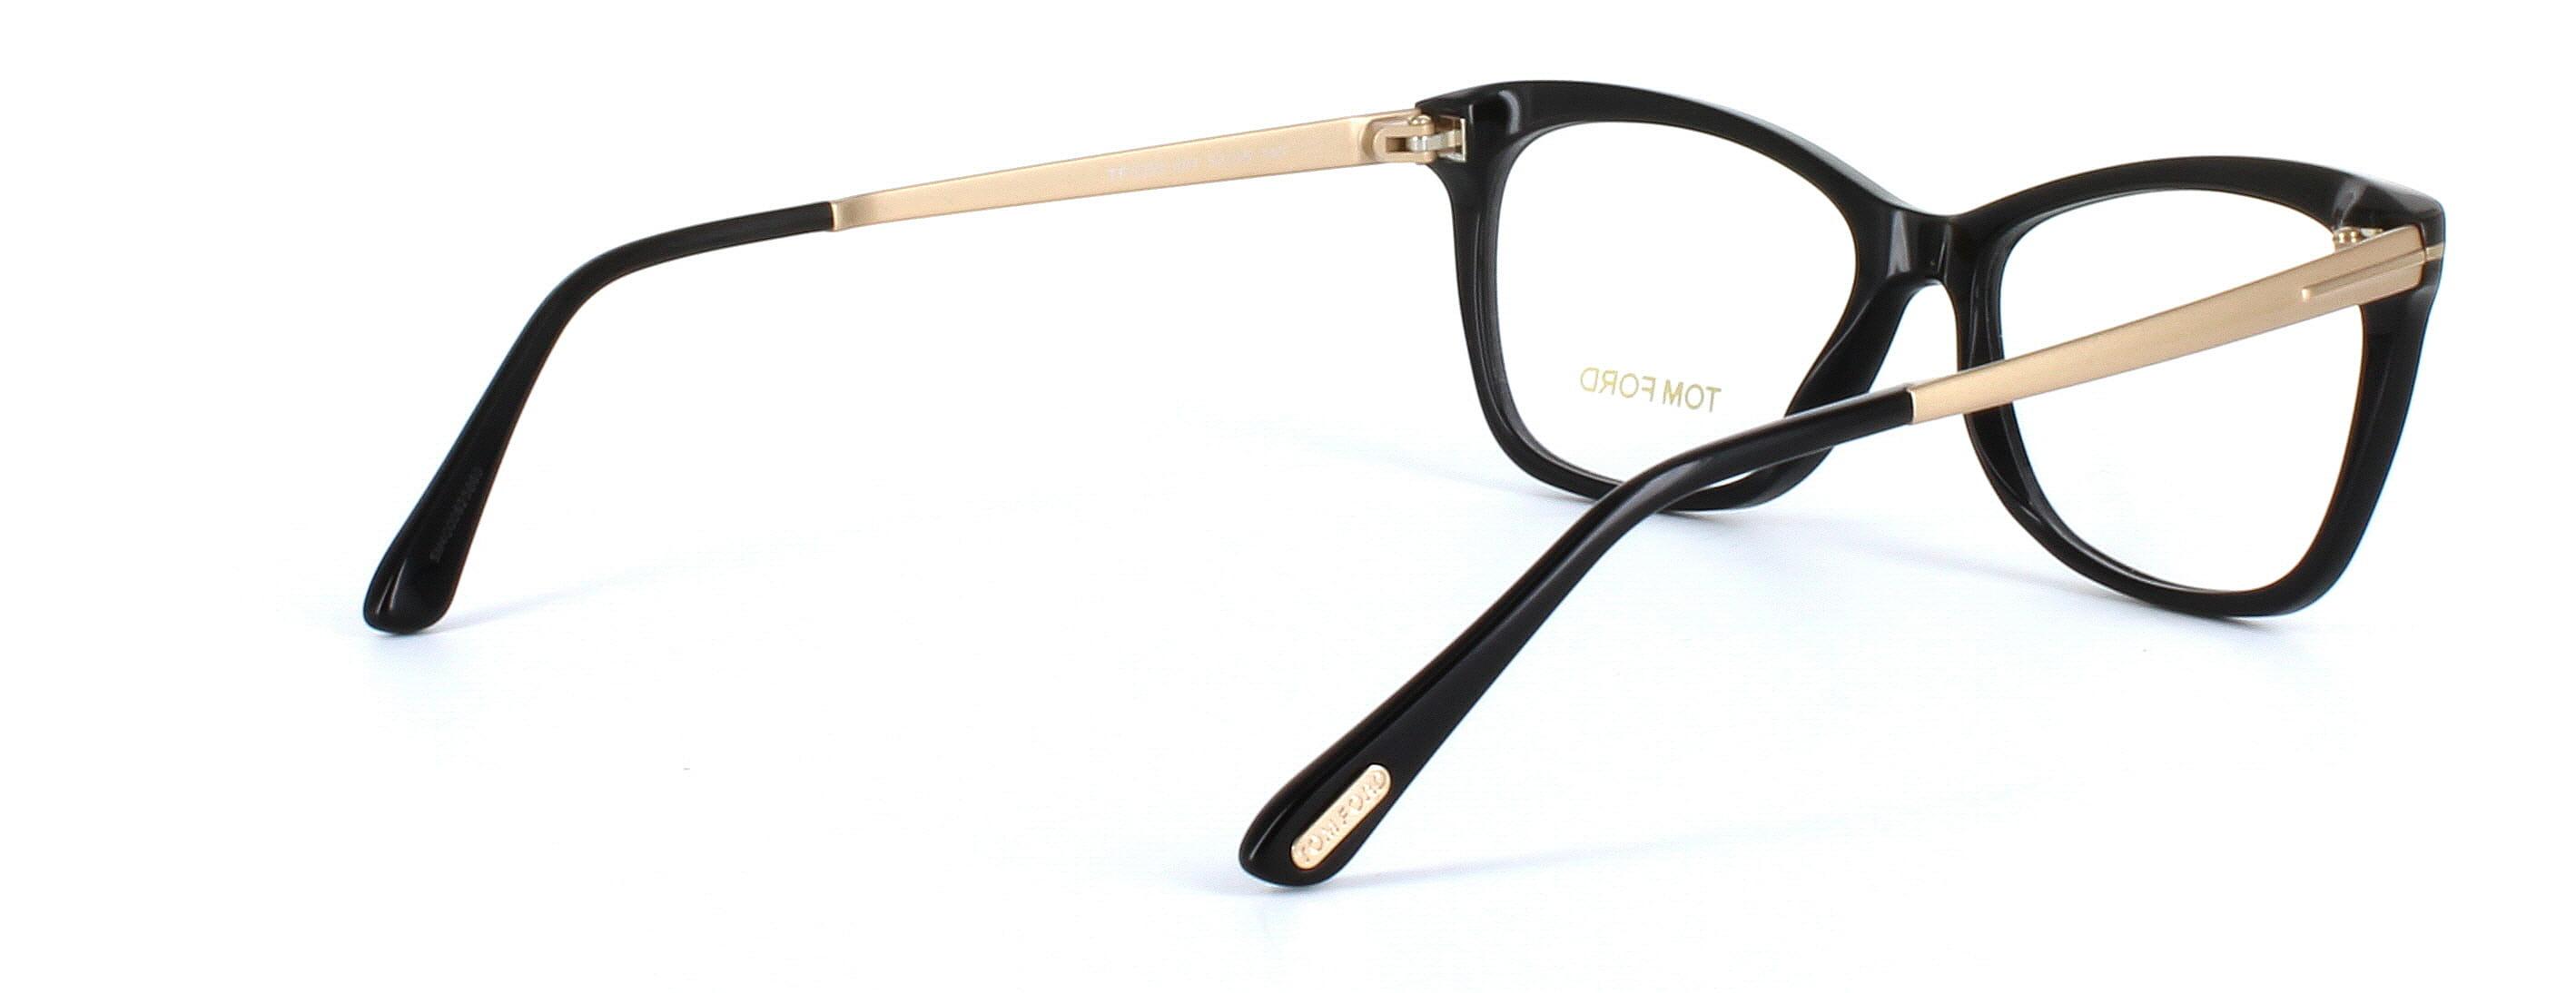 Tom Ford glasses - FT5353 - shiny black image 4